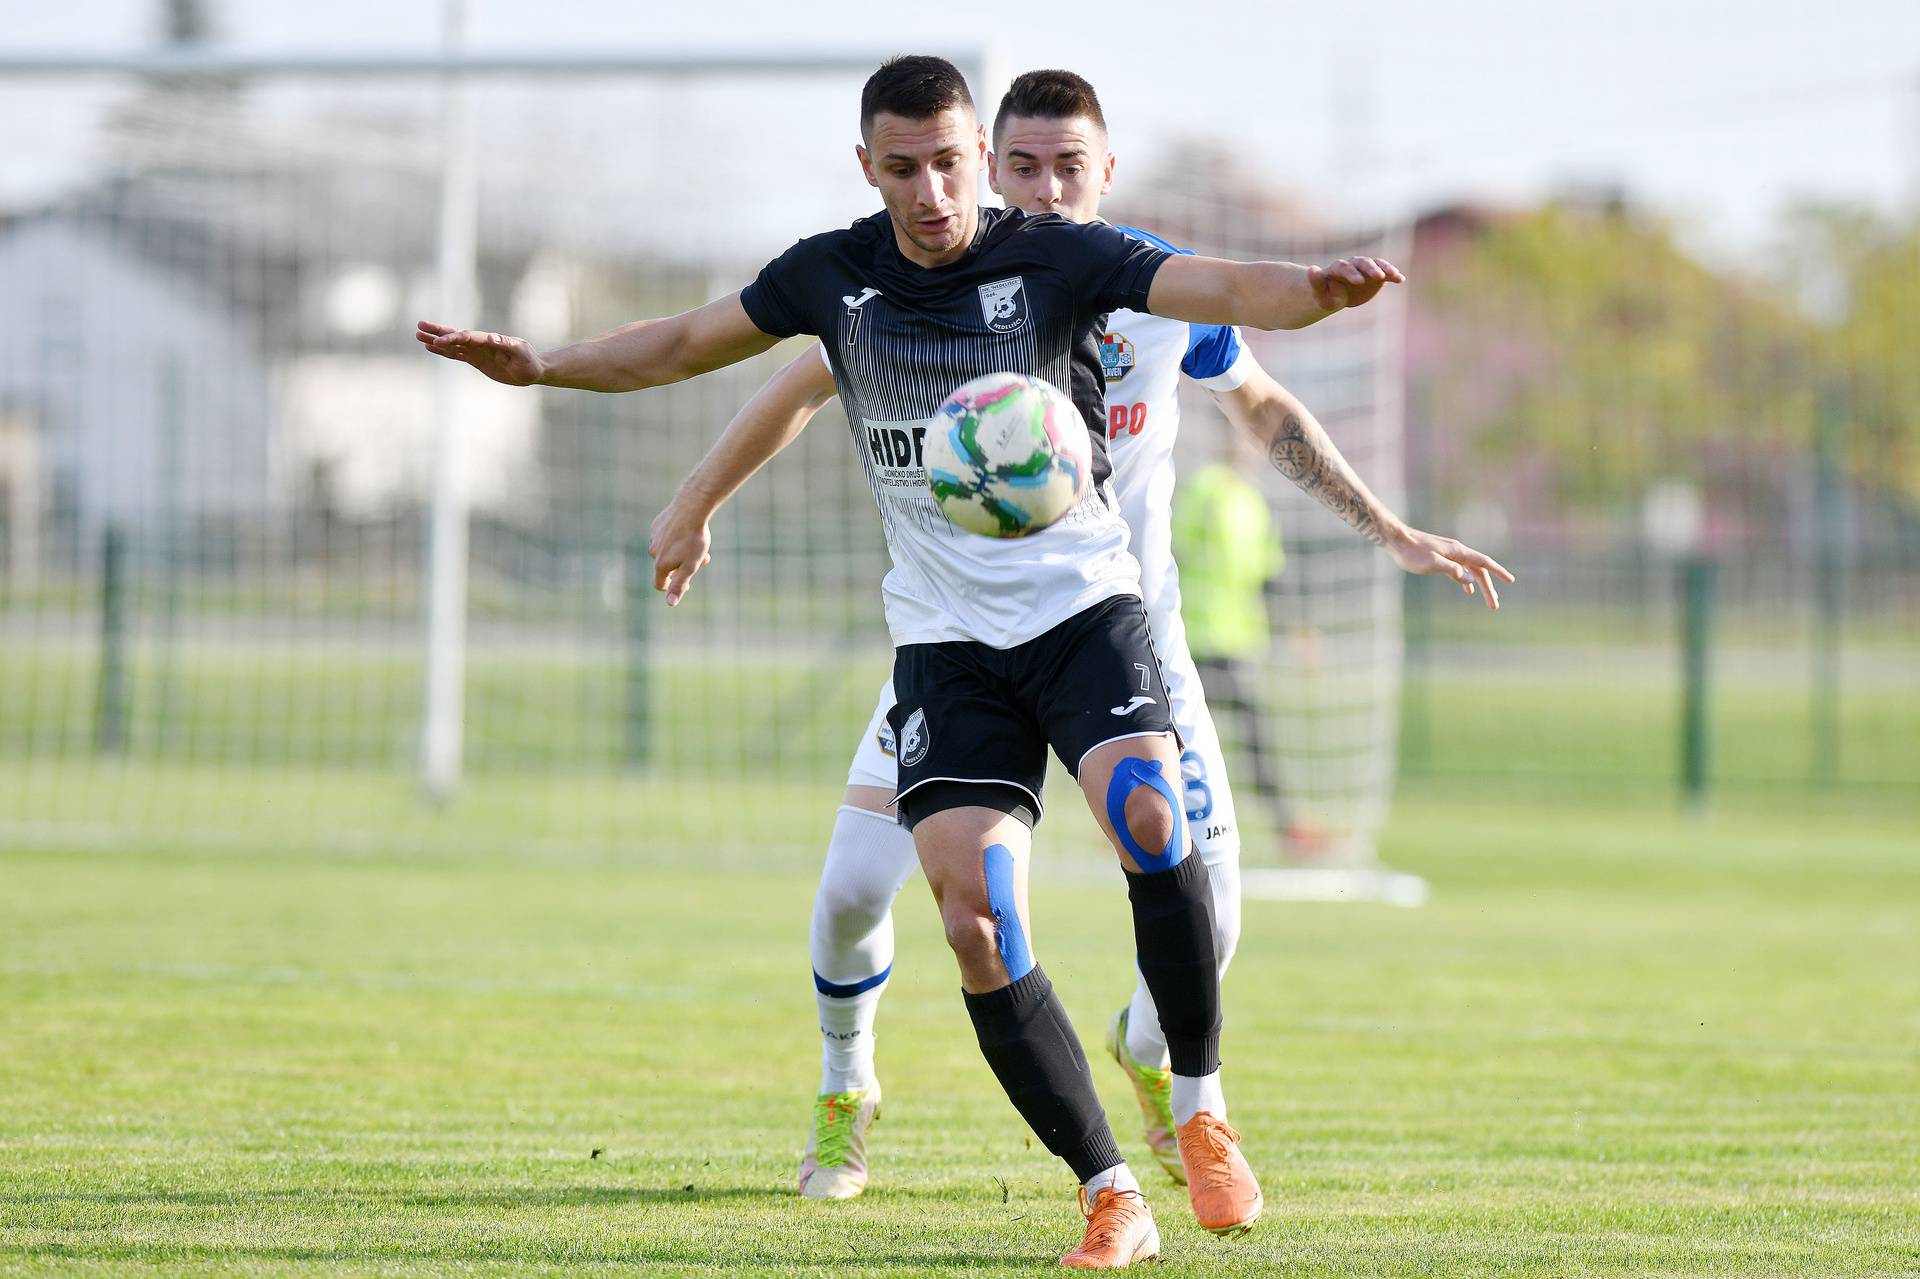 Nedelišće i Slaven Belupo sastali se u osmini finala SuperSport Hrvatskog nogometnog kupa